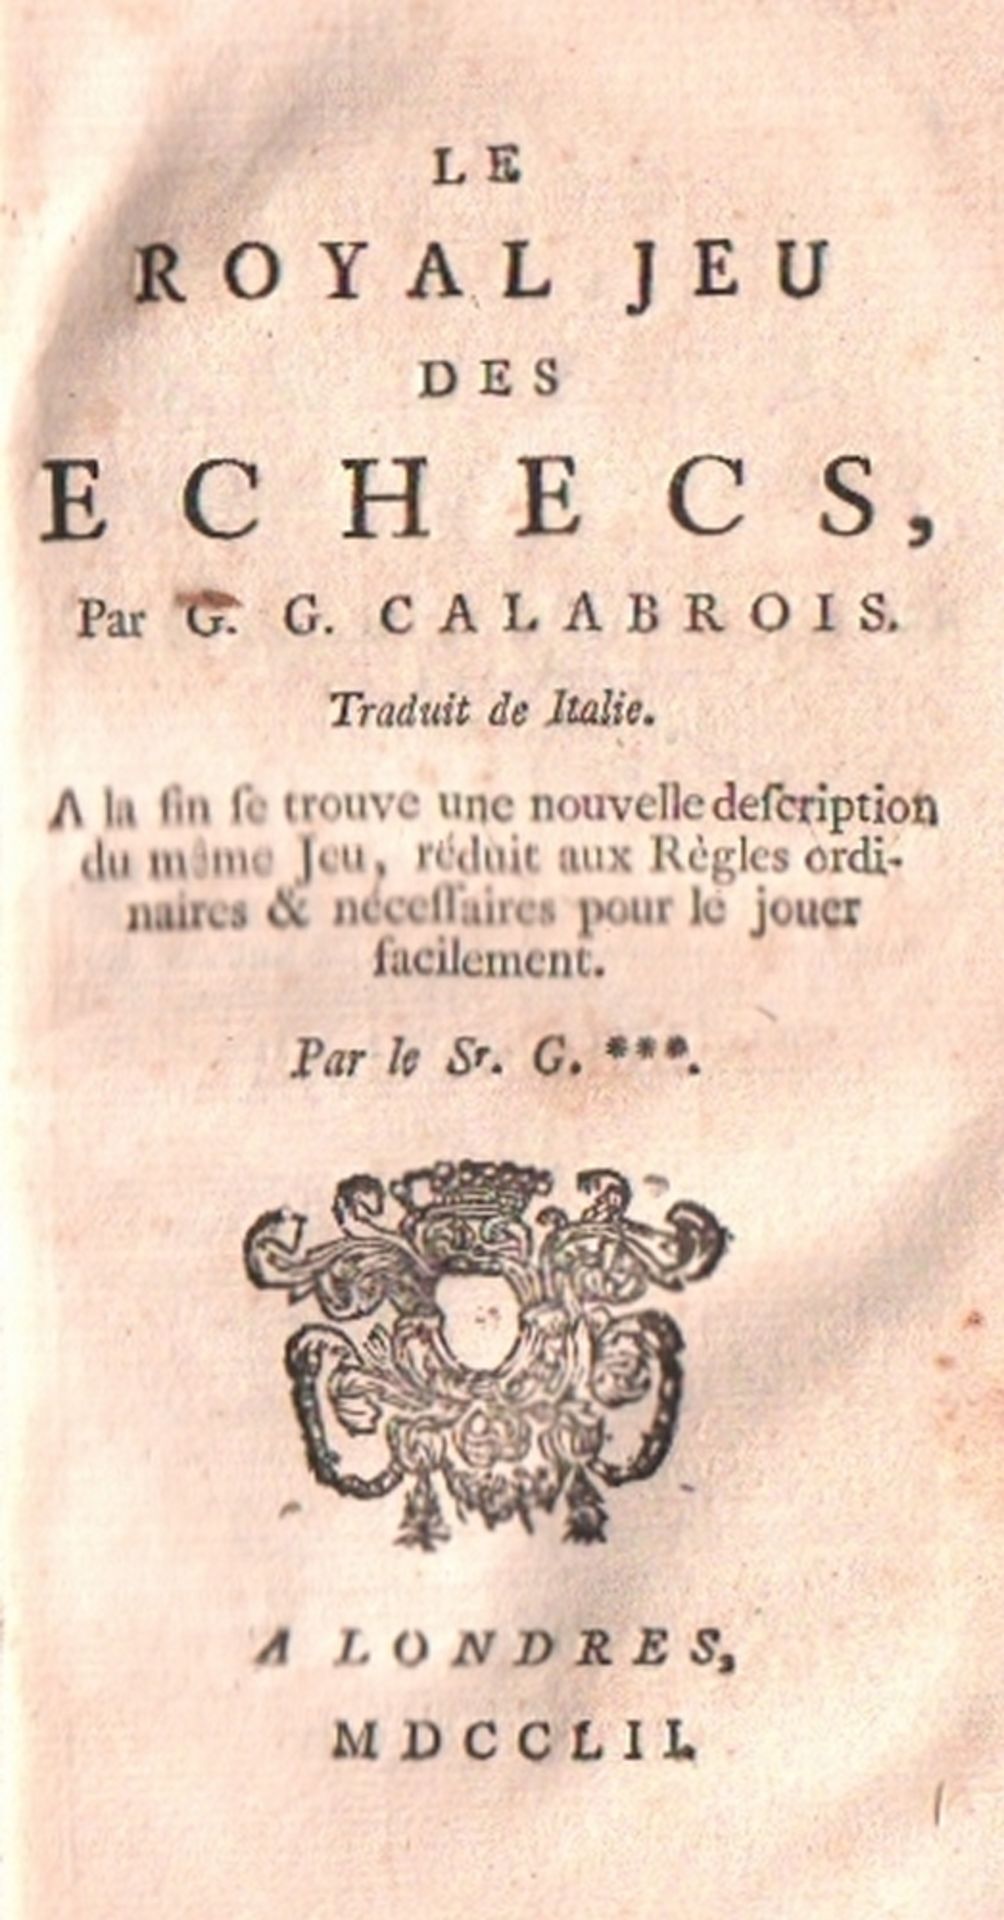 Greco, Giachino. Le royal jeu des échecs, traduit de Italie ... London 1752. 8°. 208 Seiten. Neuer